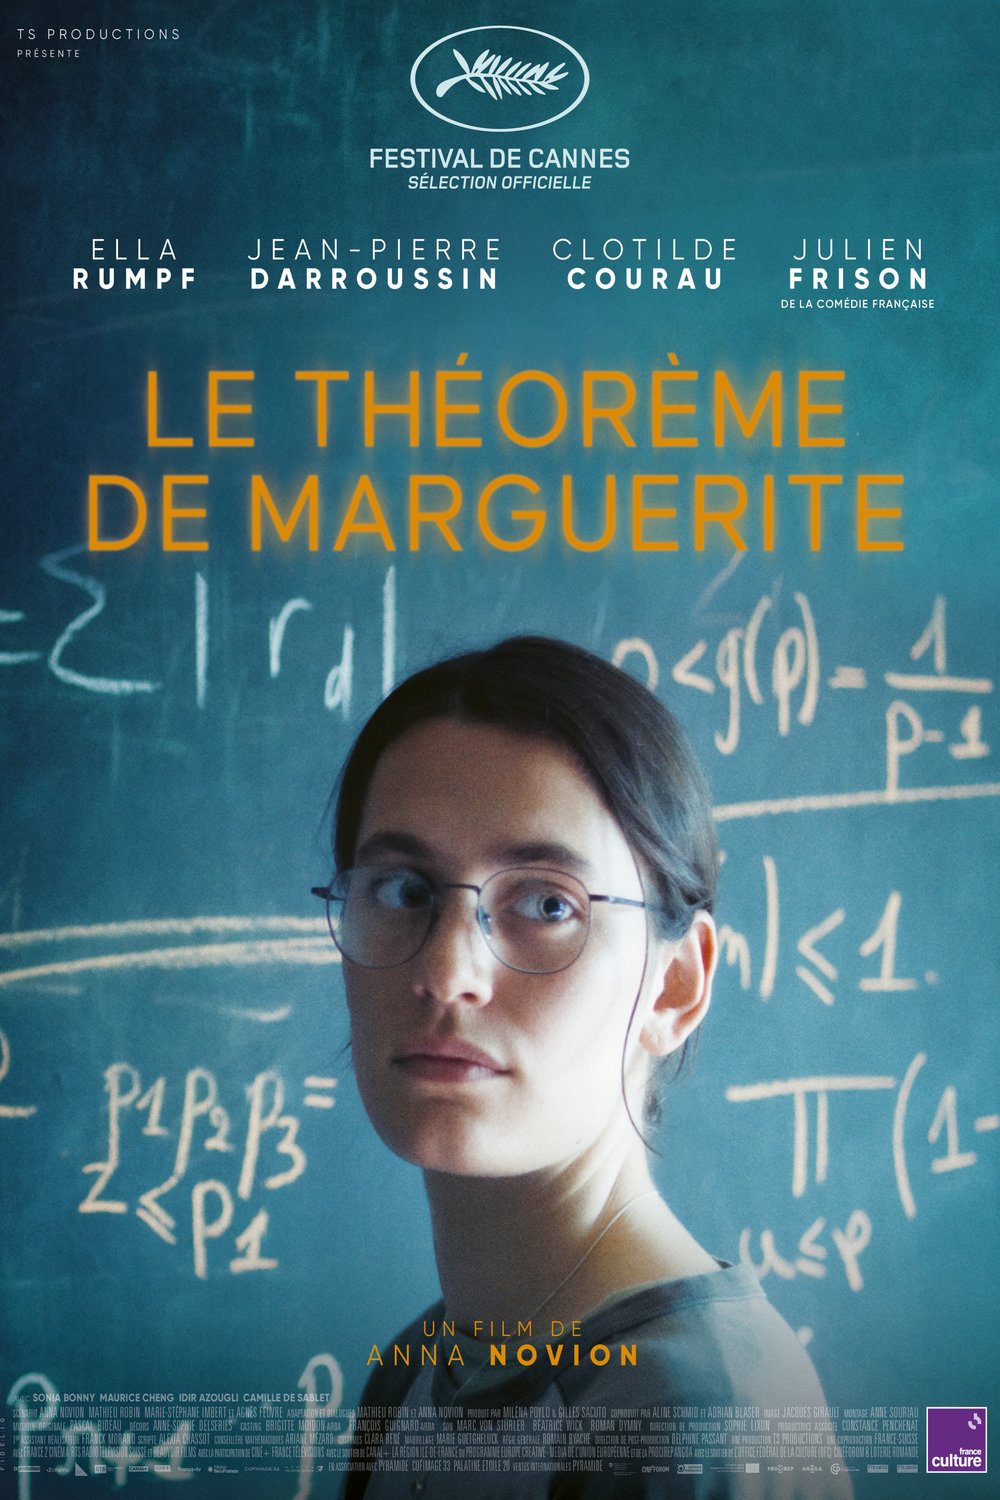 Poster of the movie Le théorème de Marguerite